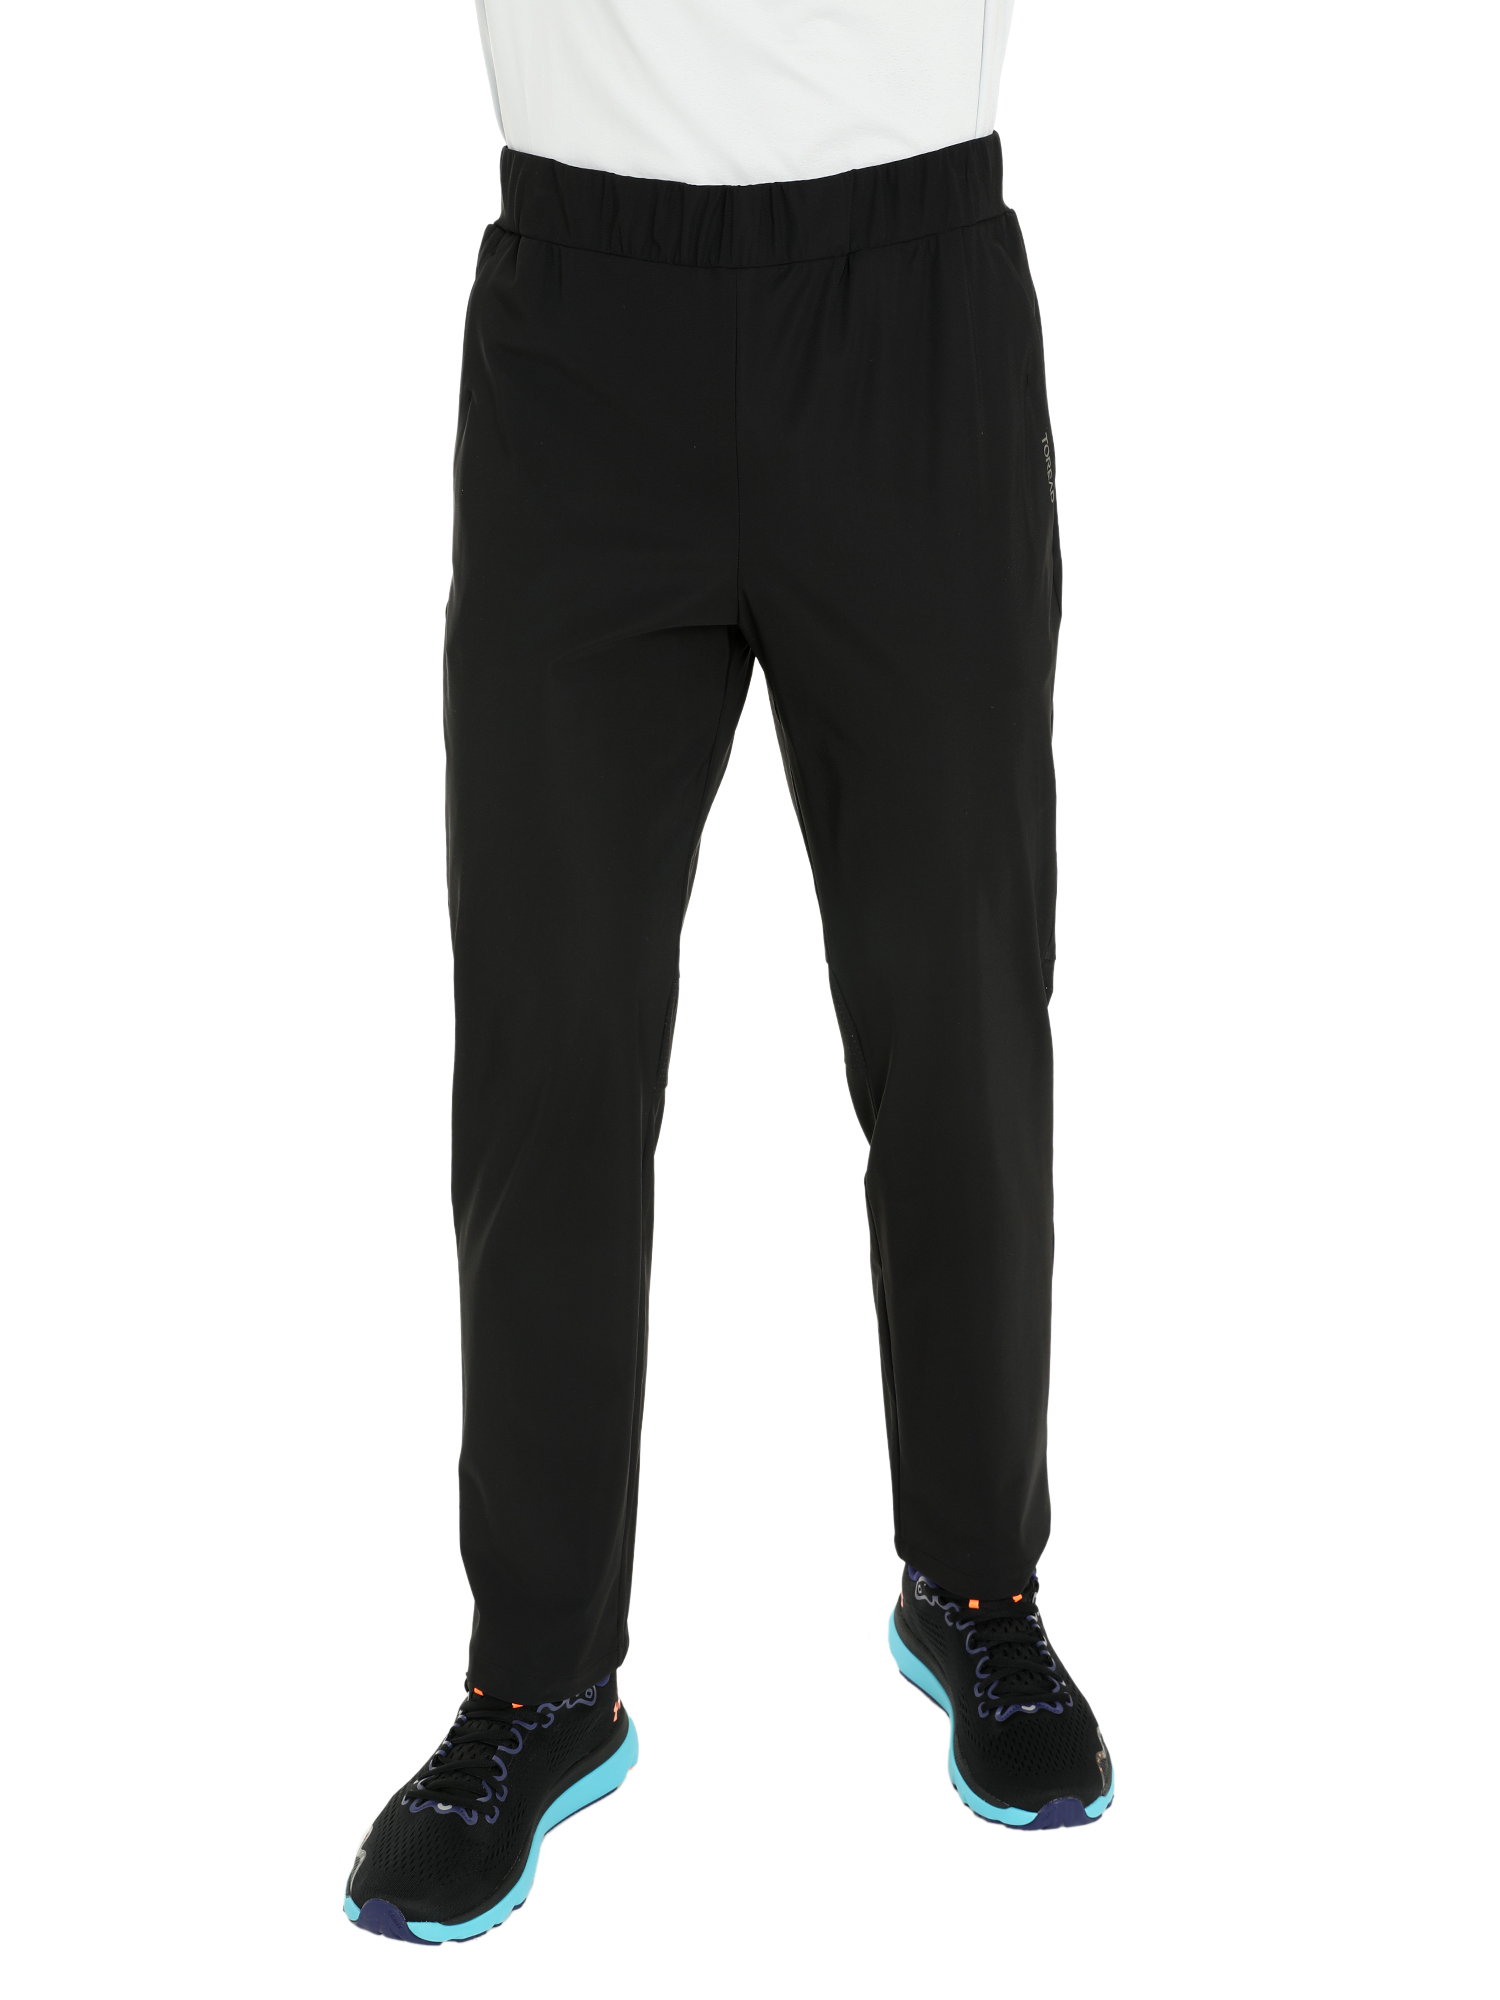 Спортивные брюки мужские Toread Men's Running Training Pants черные L